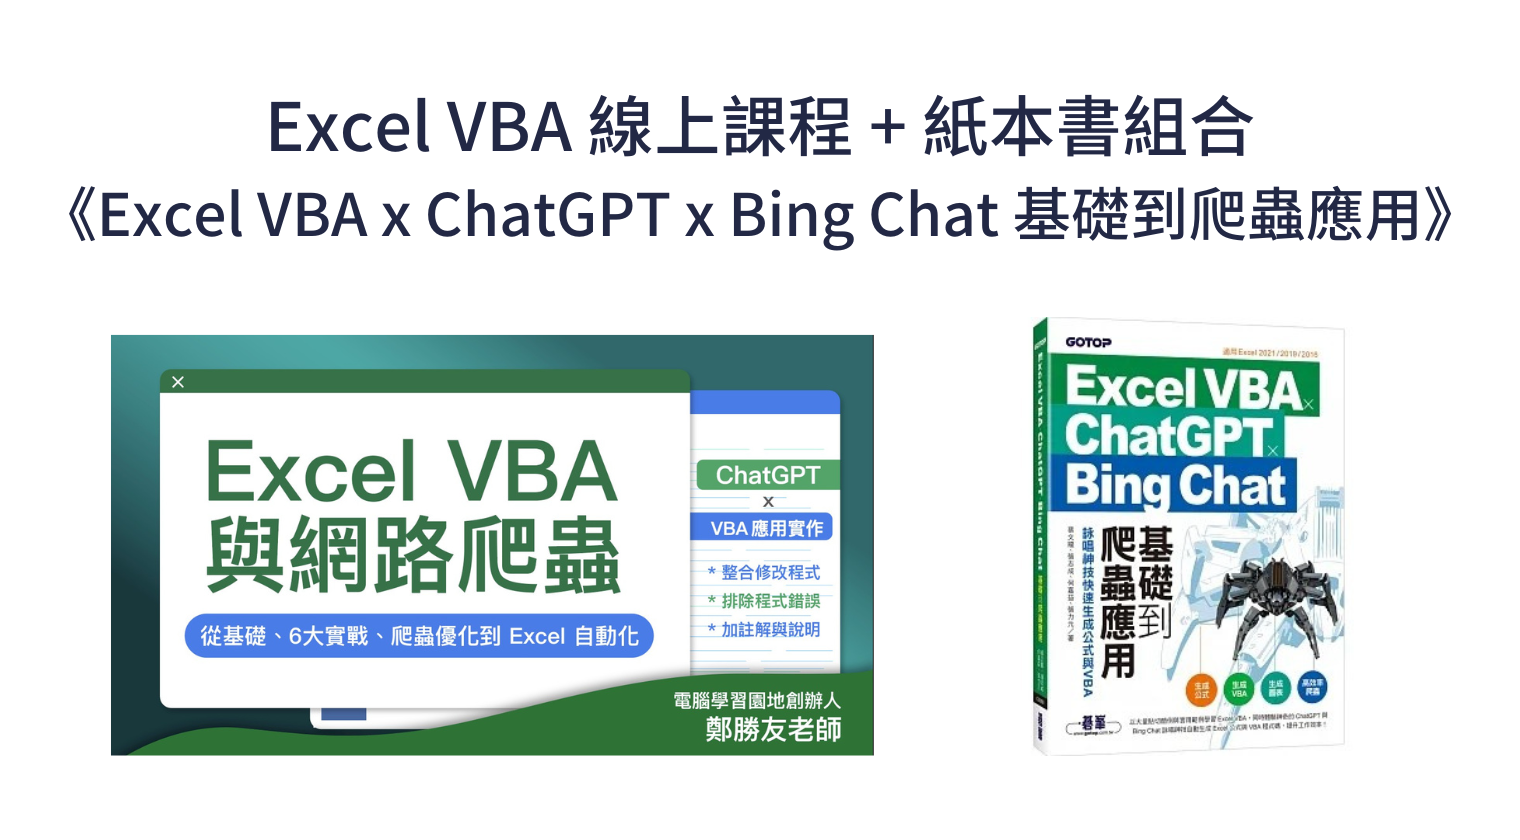 線上課程 + 《Excel VBA x ChatGPT x Bing Chat 基礎到爬蟲應用》紙本書組合